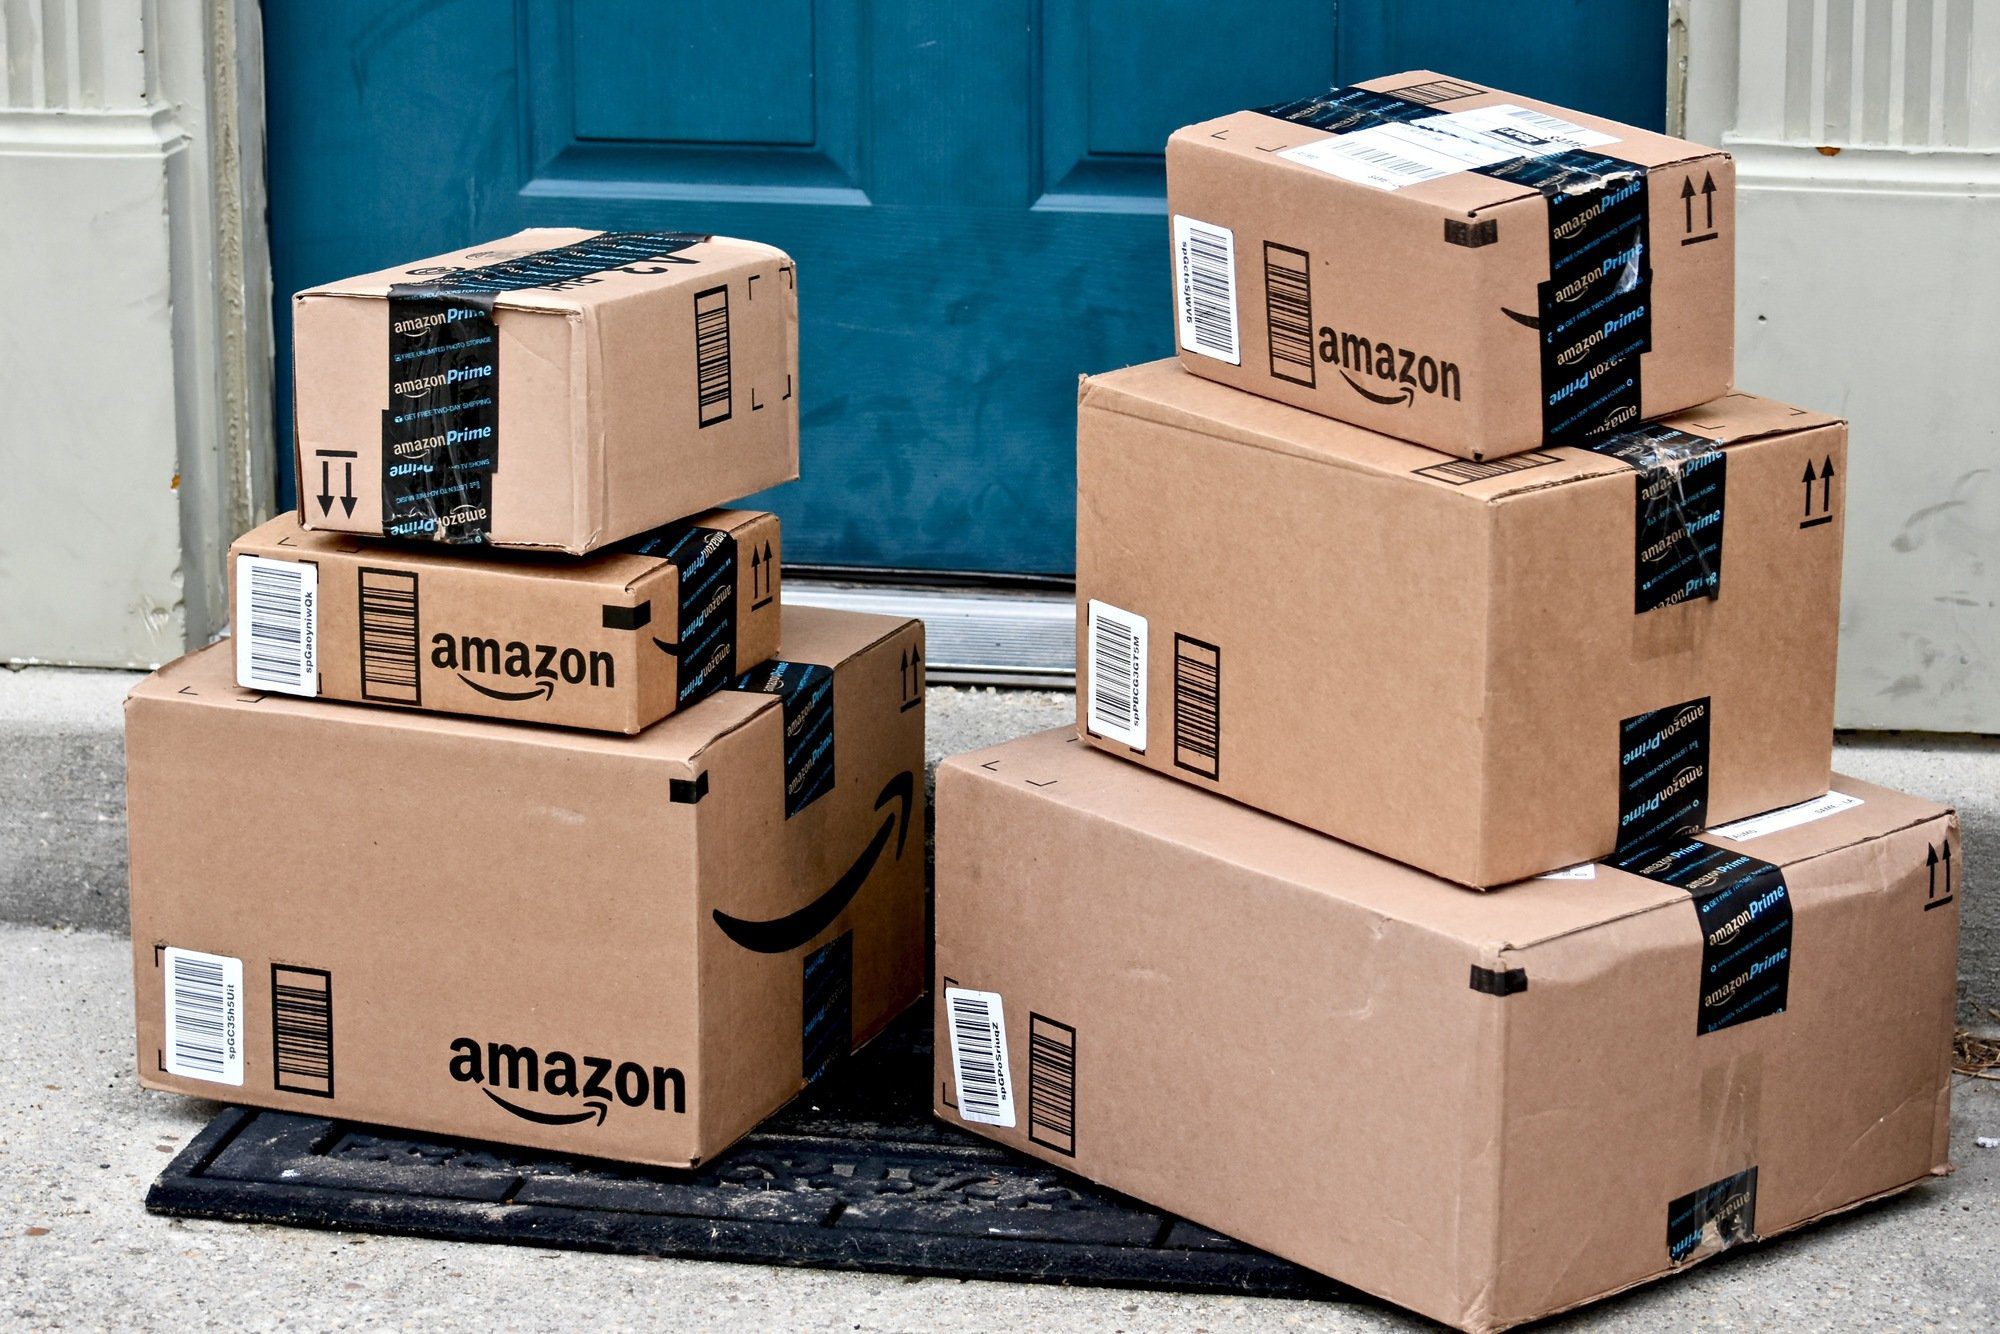 Amazon orders